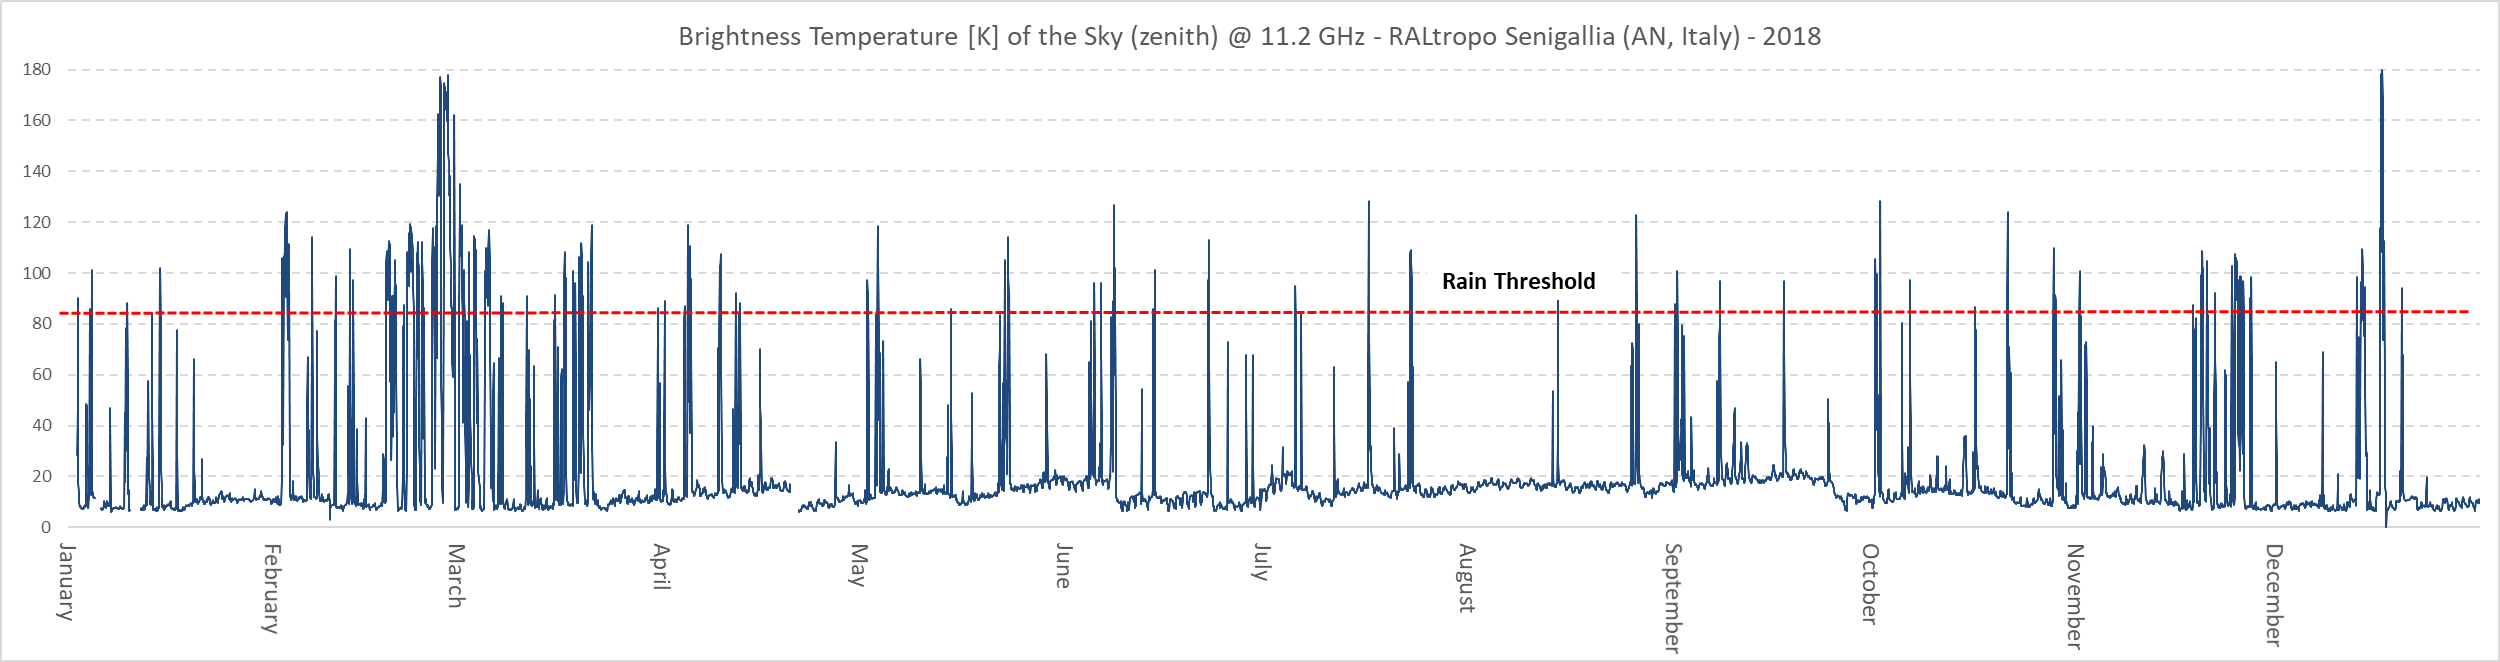 Variazioni annuali della temperatura di brillanza del cielo a 11.2 GHz registrate dal radiometro RALtropo. Ogni punto del grafico rappresenta il valore medio giornaliero della temperatura di brillanza. 